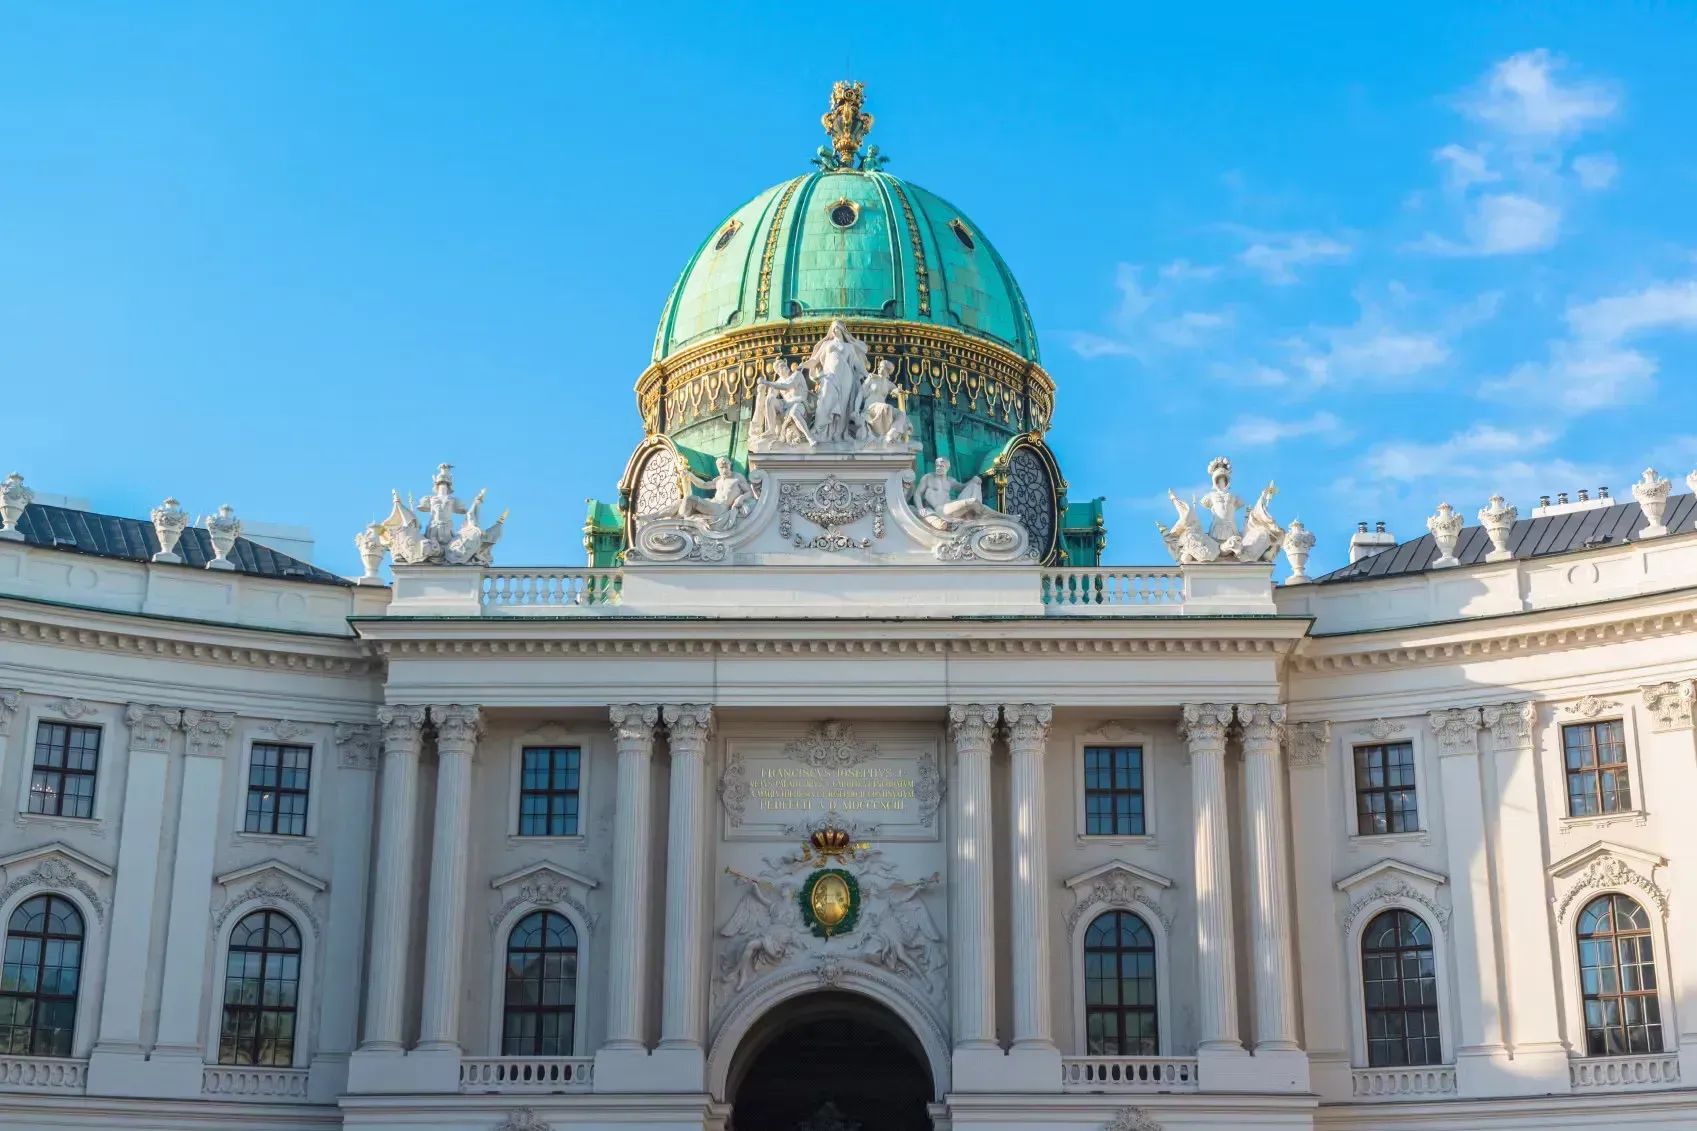 O Poder Imperial no Palácio de Hofburg